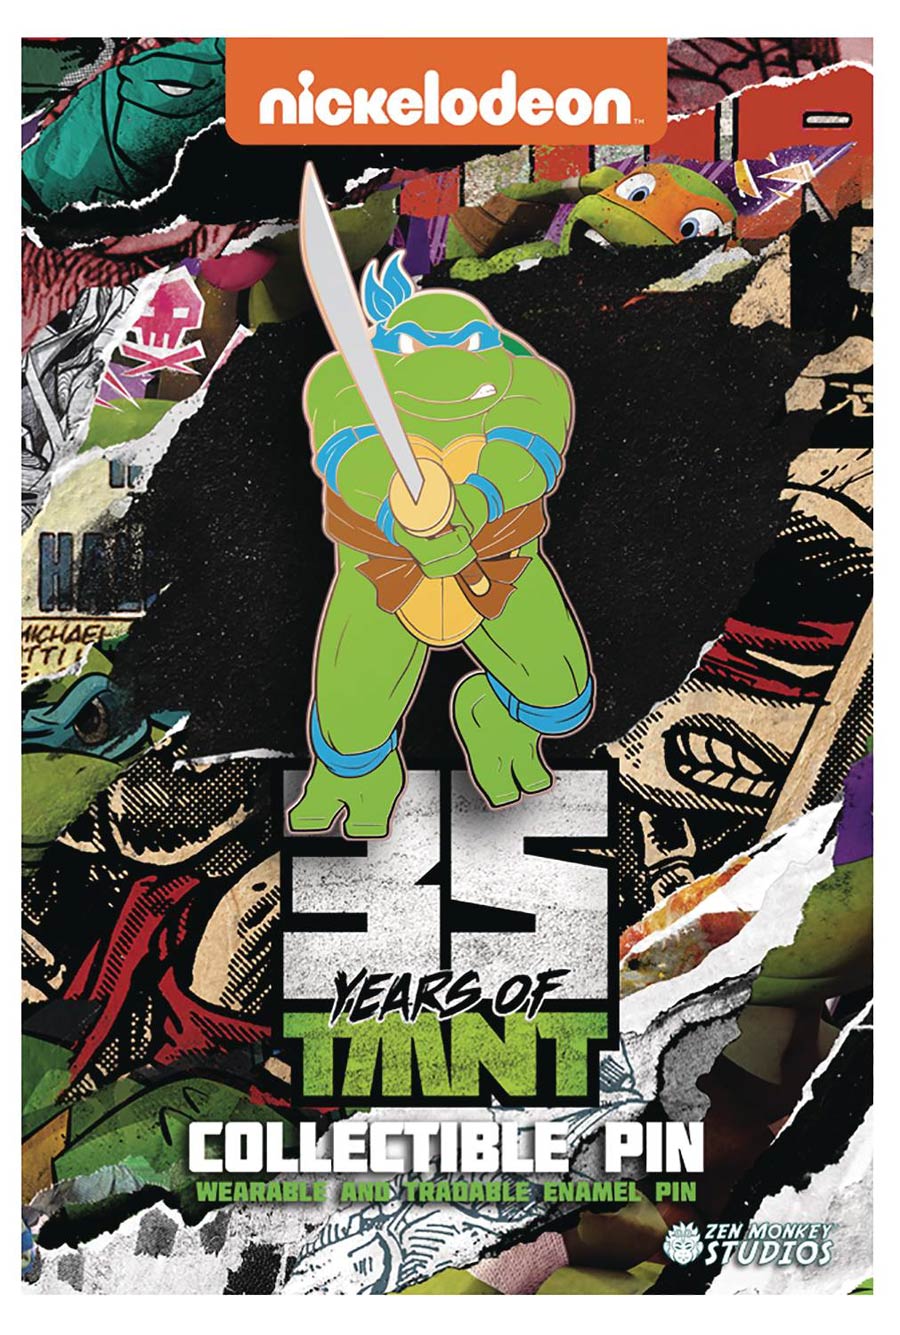 Teenage Mutant Ninja Turtles 35th Anniversary Limited Leaping Pin - Leonardo